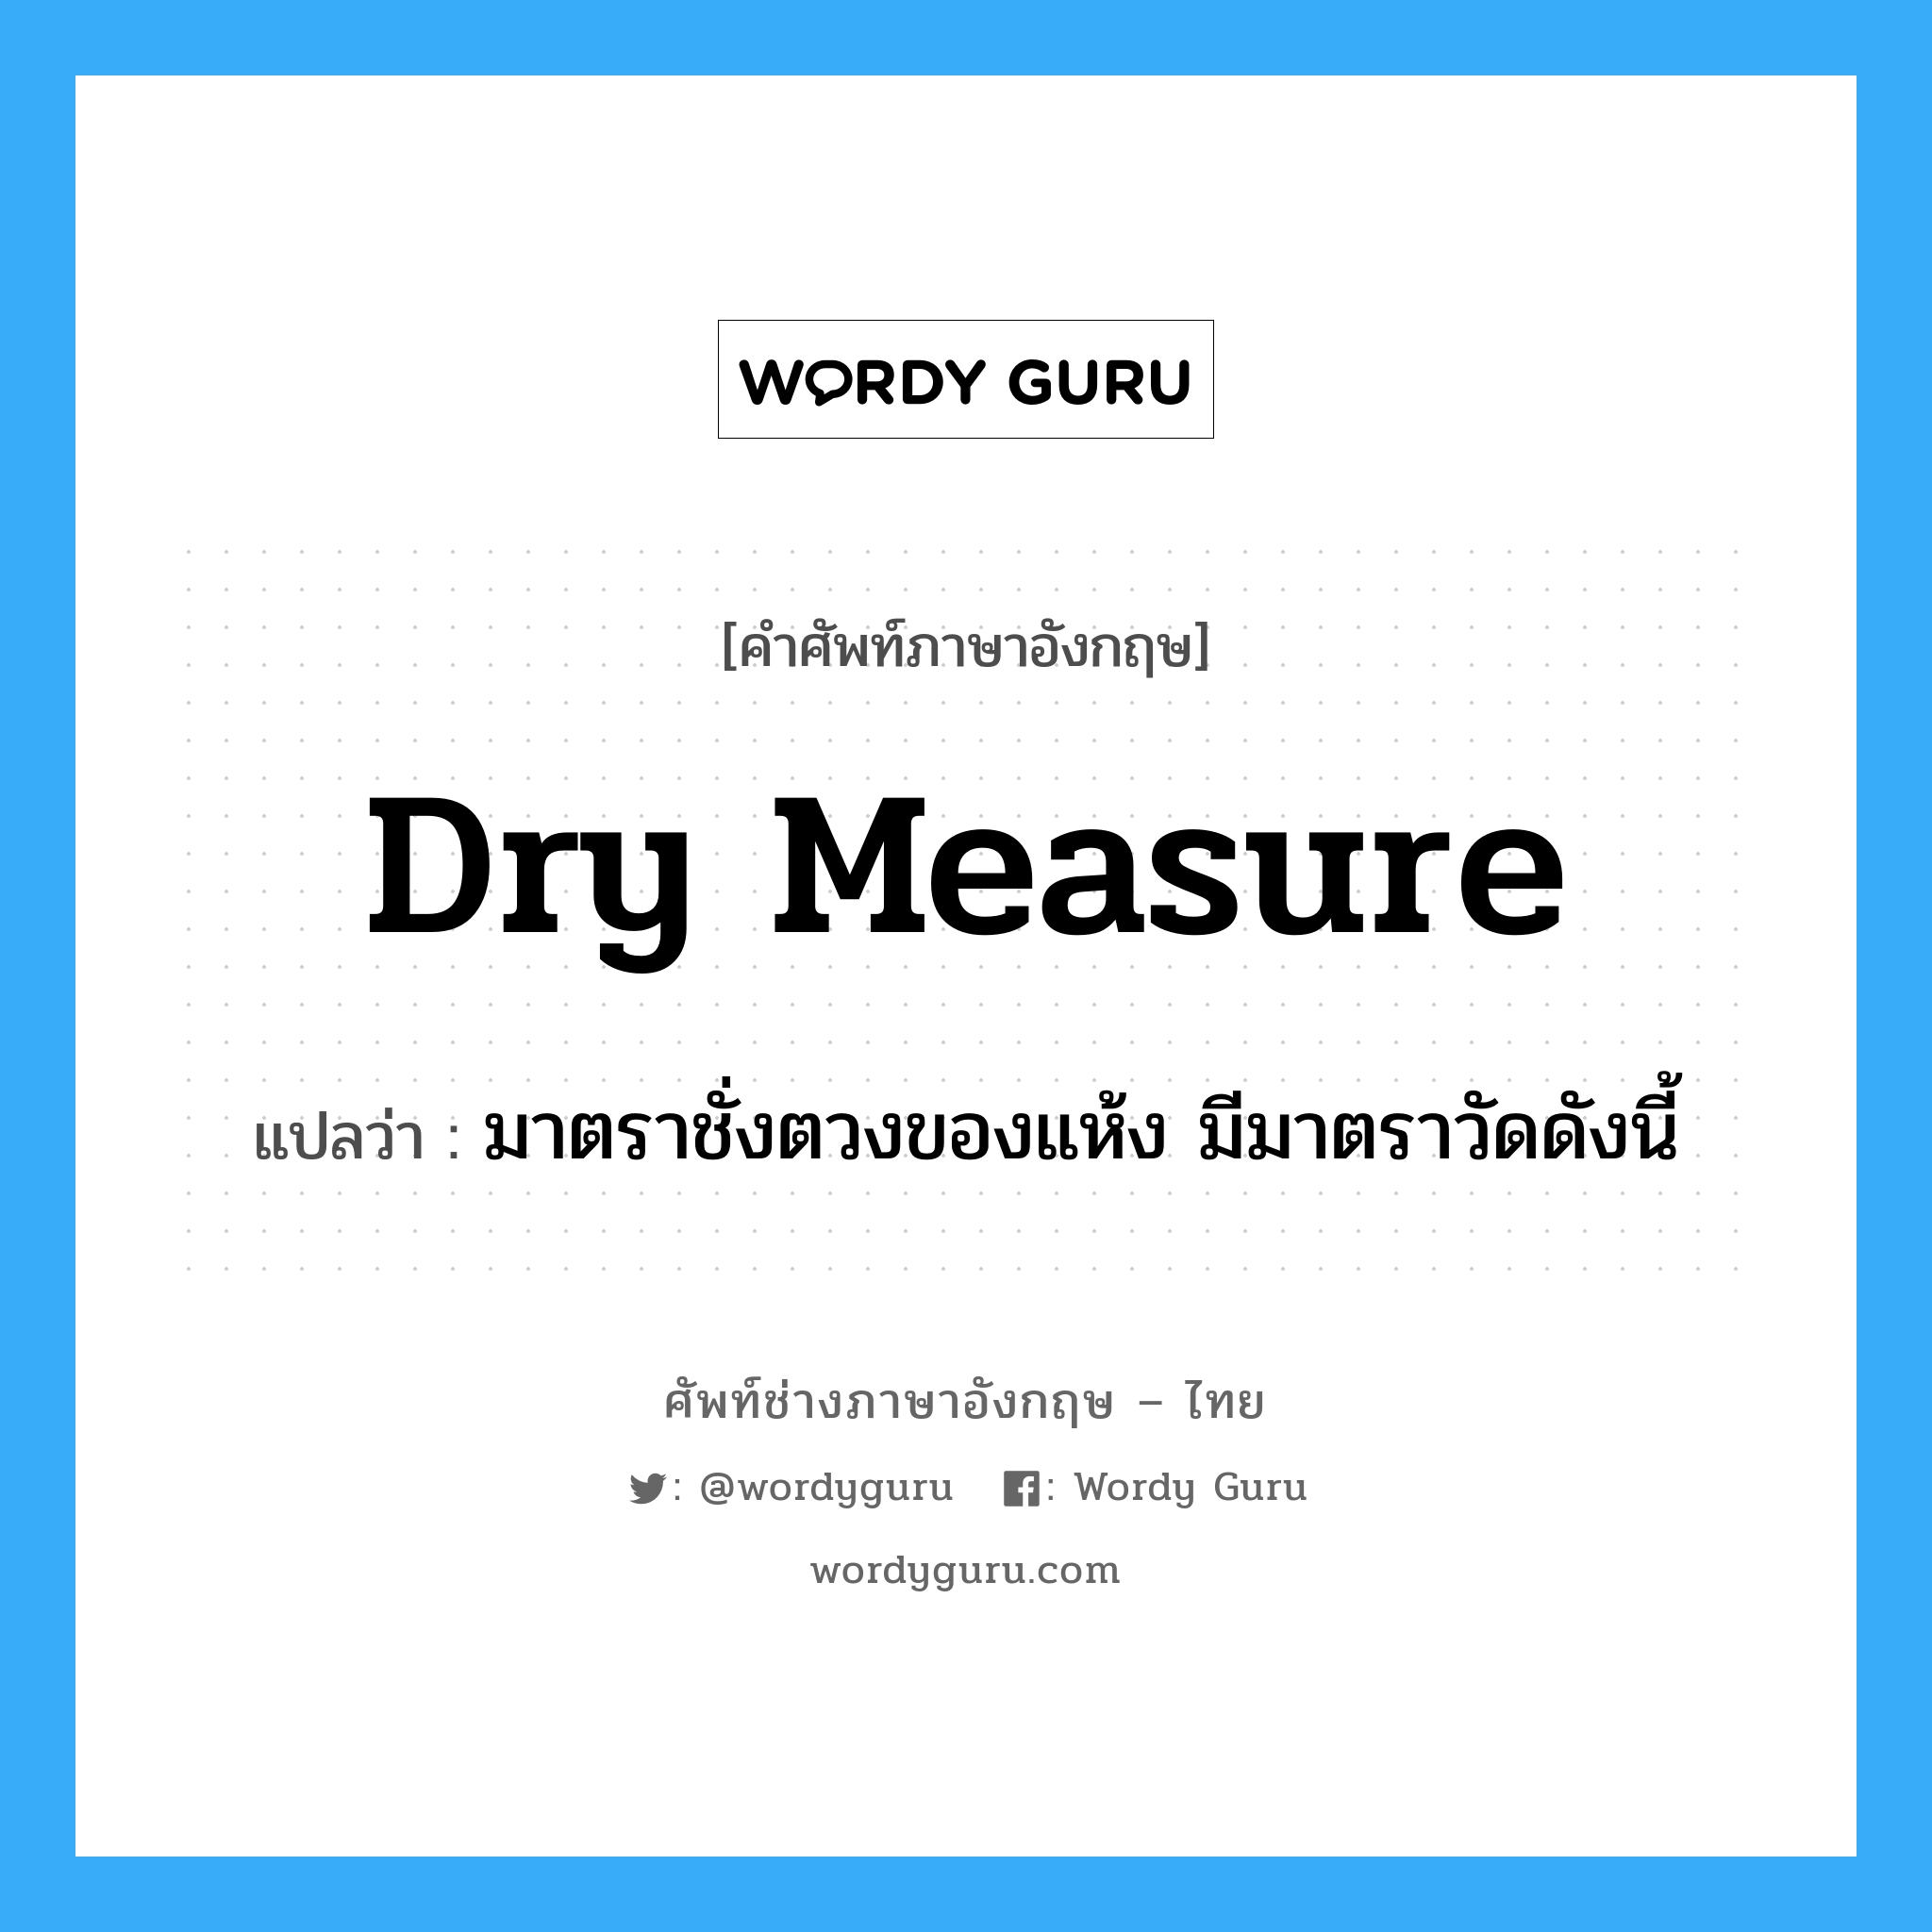 dry measure แปลว่า?, คำศัพท์ช่างภาษาอังกฤษ - ไทย dry measure คำศัพท์ภาษาอังกฤษ dry measure แปลว่า มาตราชั่งตวงของแห้ง มีมาตราวัดดังนี้